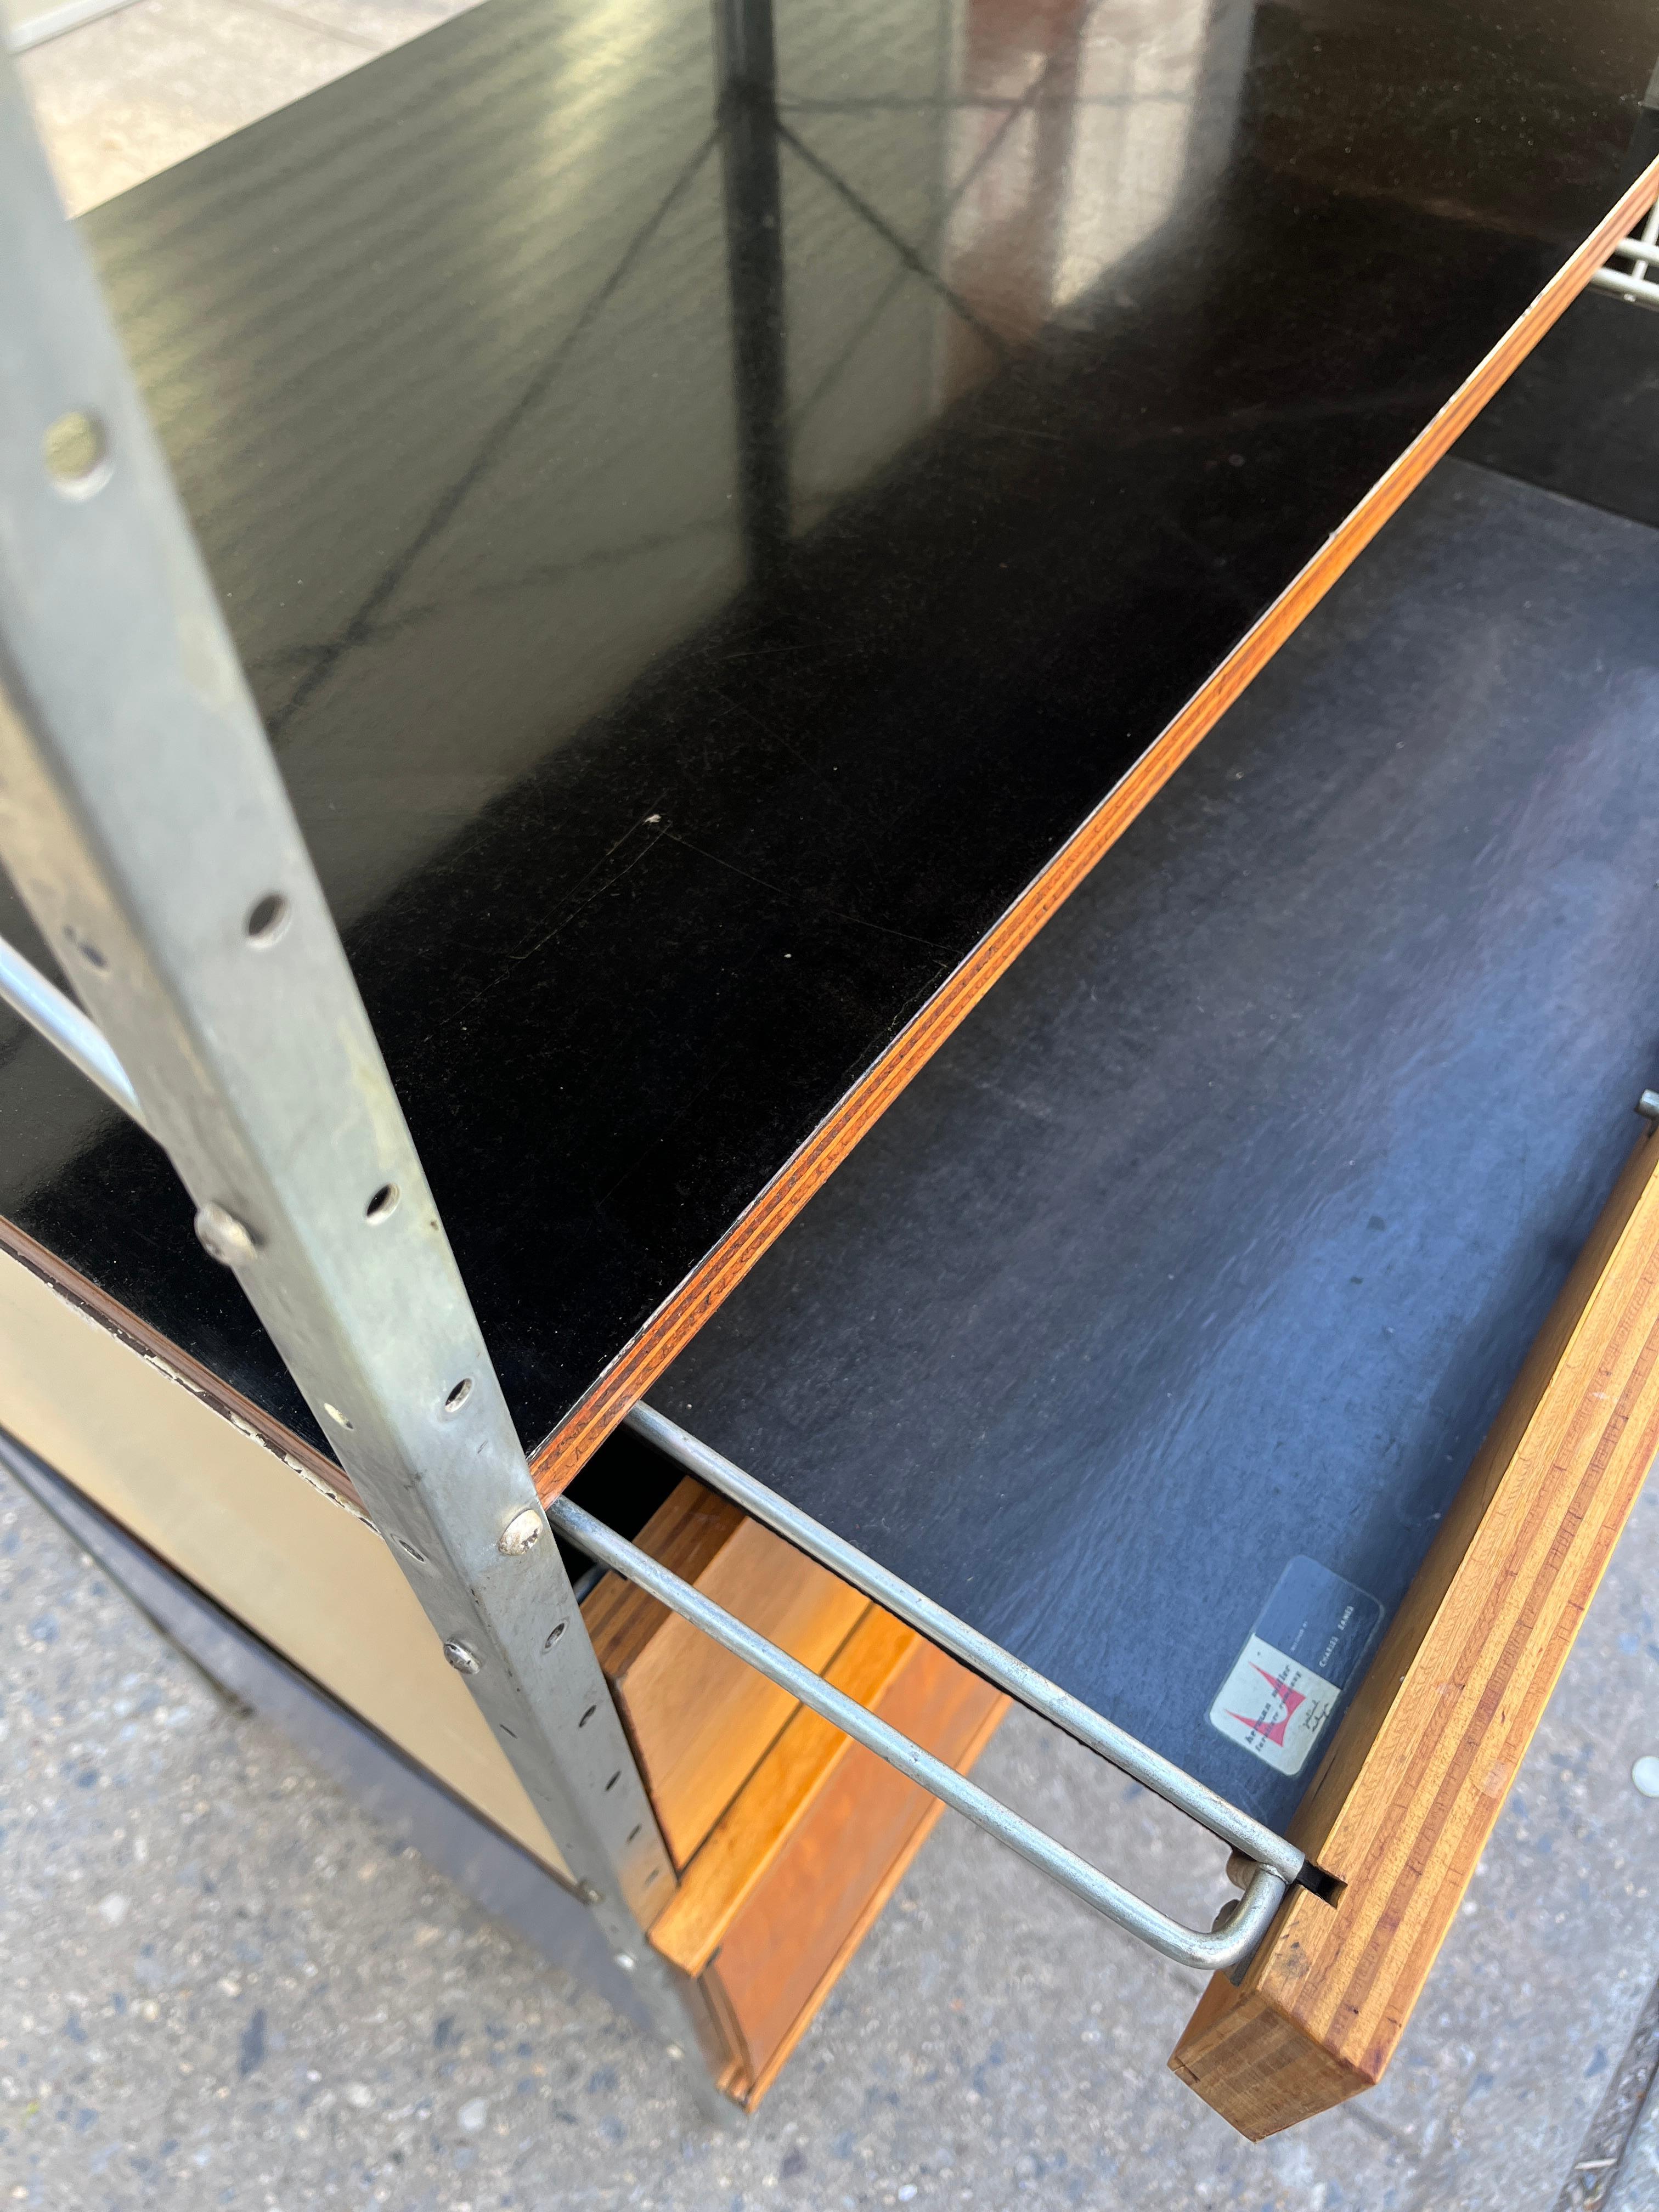 Zur Auswahl steht dieses von Charles und Ray Eames entworfene ESU 400-C für Herman Miller. Dies ist die seltenste ESU (Eames Storage Unit) aus der 1. Serie. Ein vielseitiges Möbelstück, das einen wunderbaren Schrank, ein Bücherregal und eine